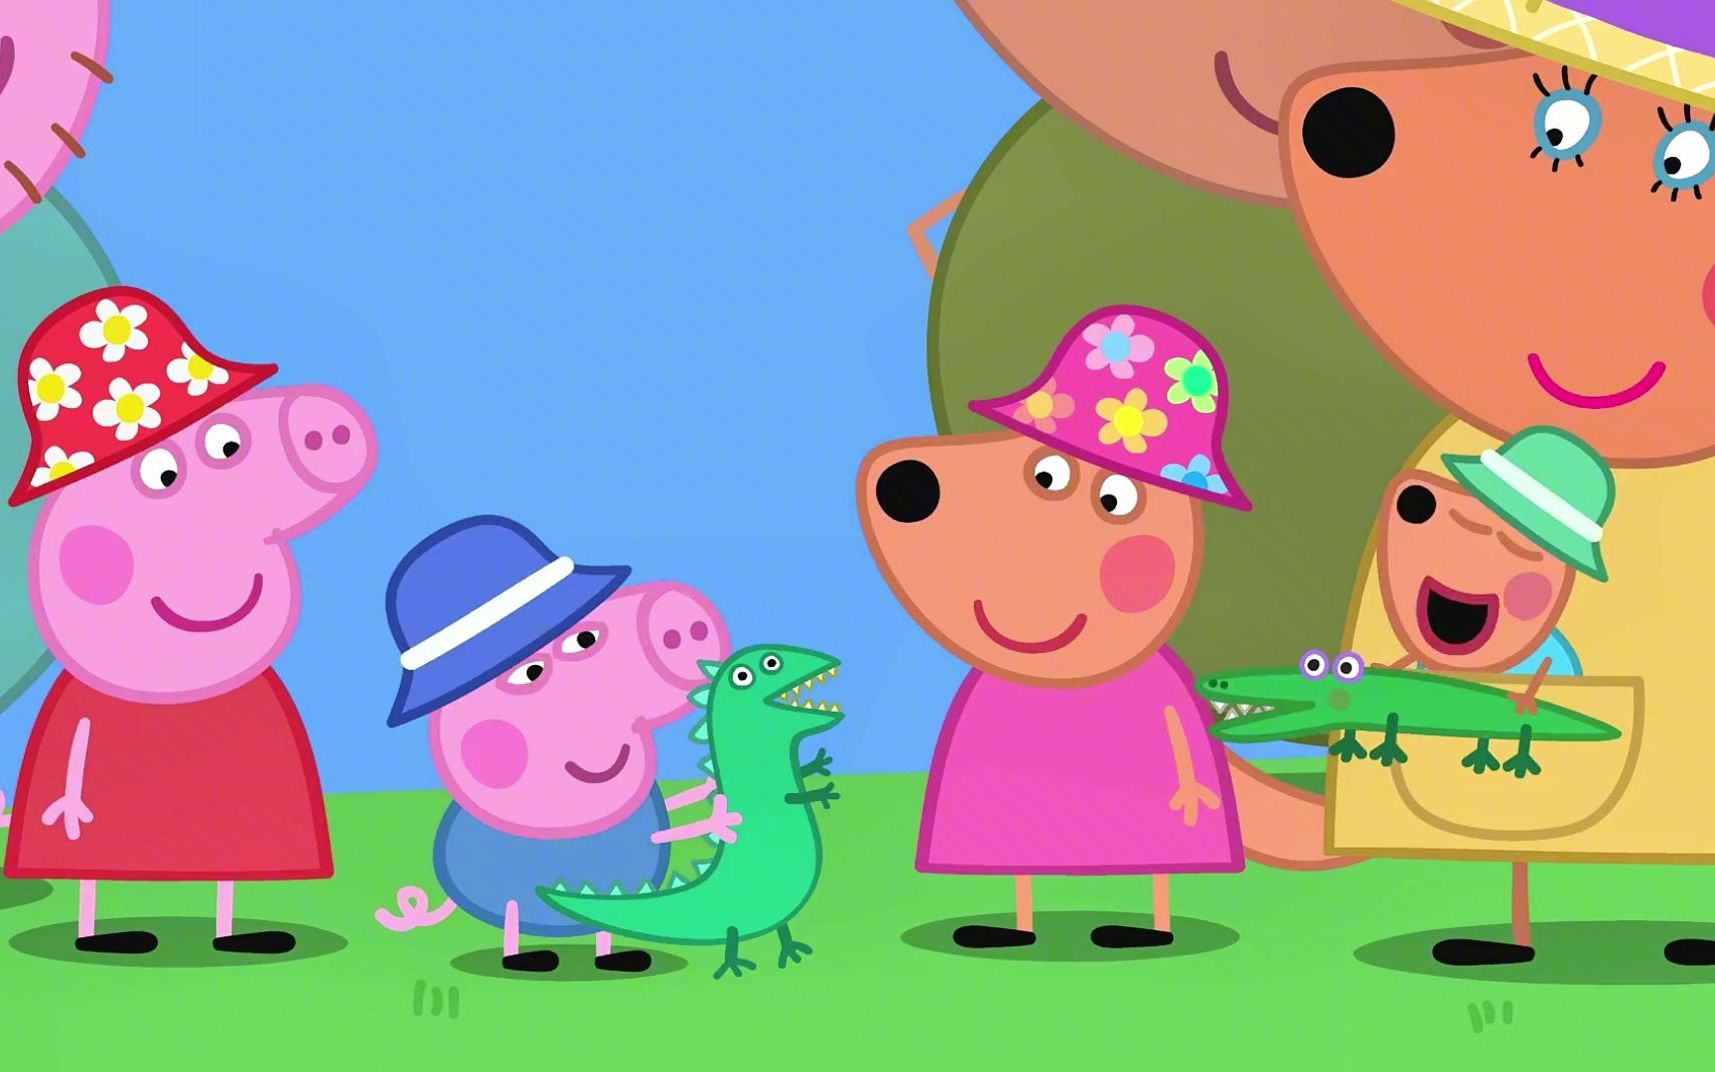 小猪佩奇第七季:佩奇一家到澳大利亚玩!袋鼠一家招待他们去野餐